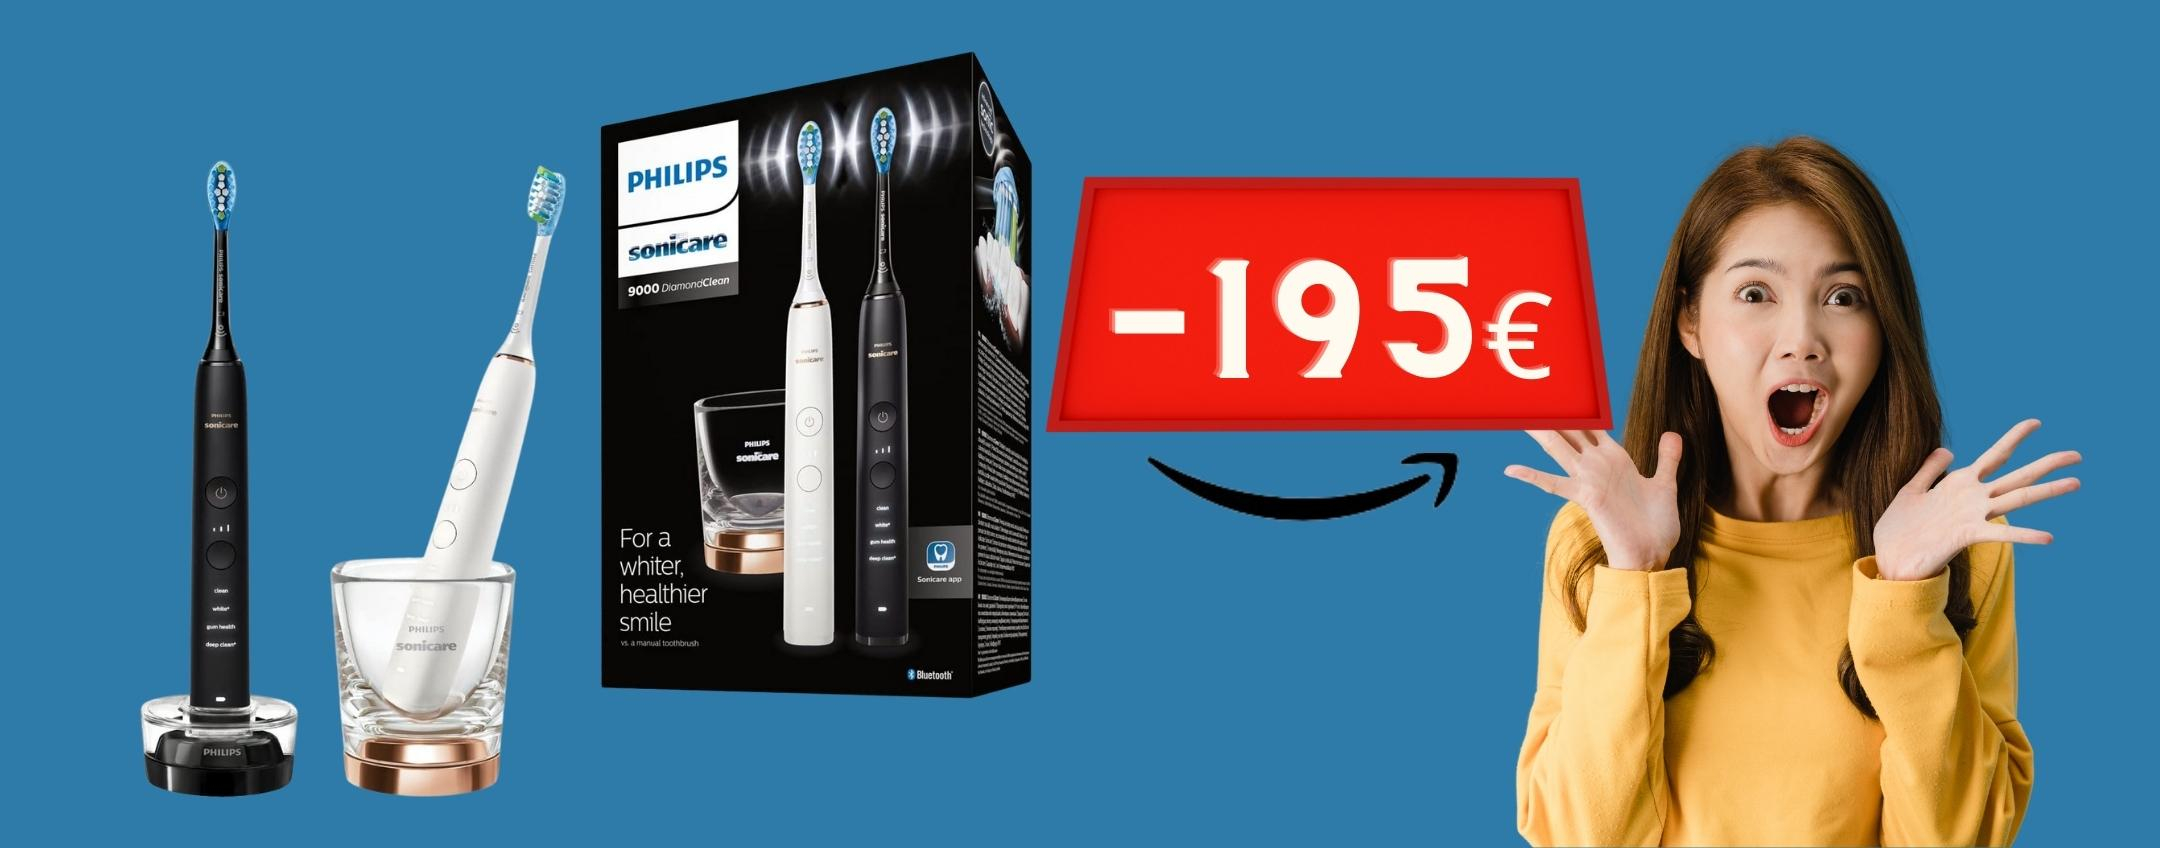 Philips Sonicare: 2 spazzolini elettrici al prezzo di uno, ROBA da MATTI